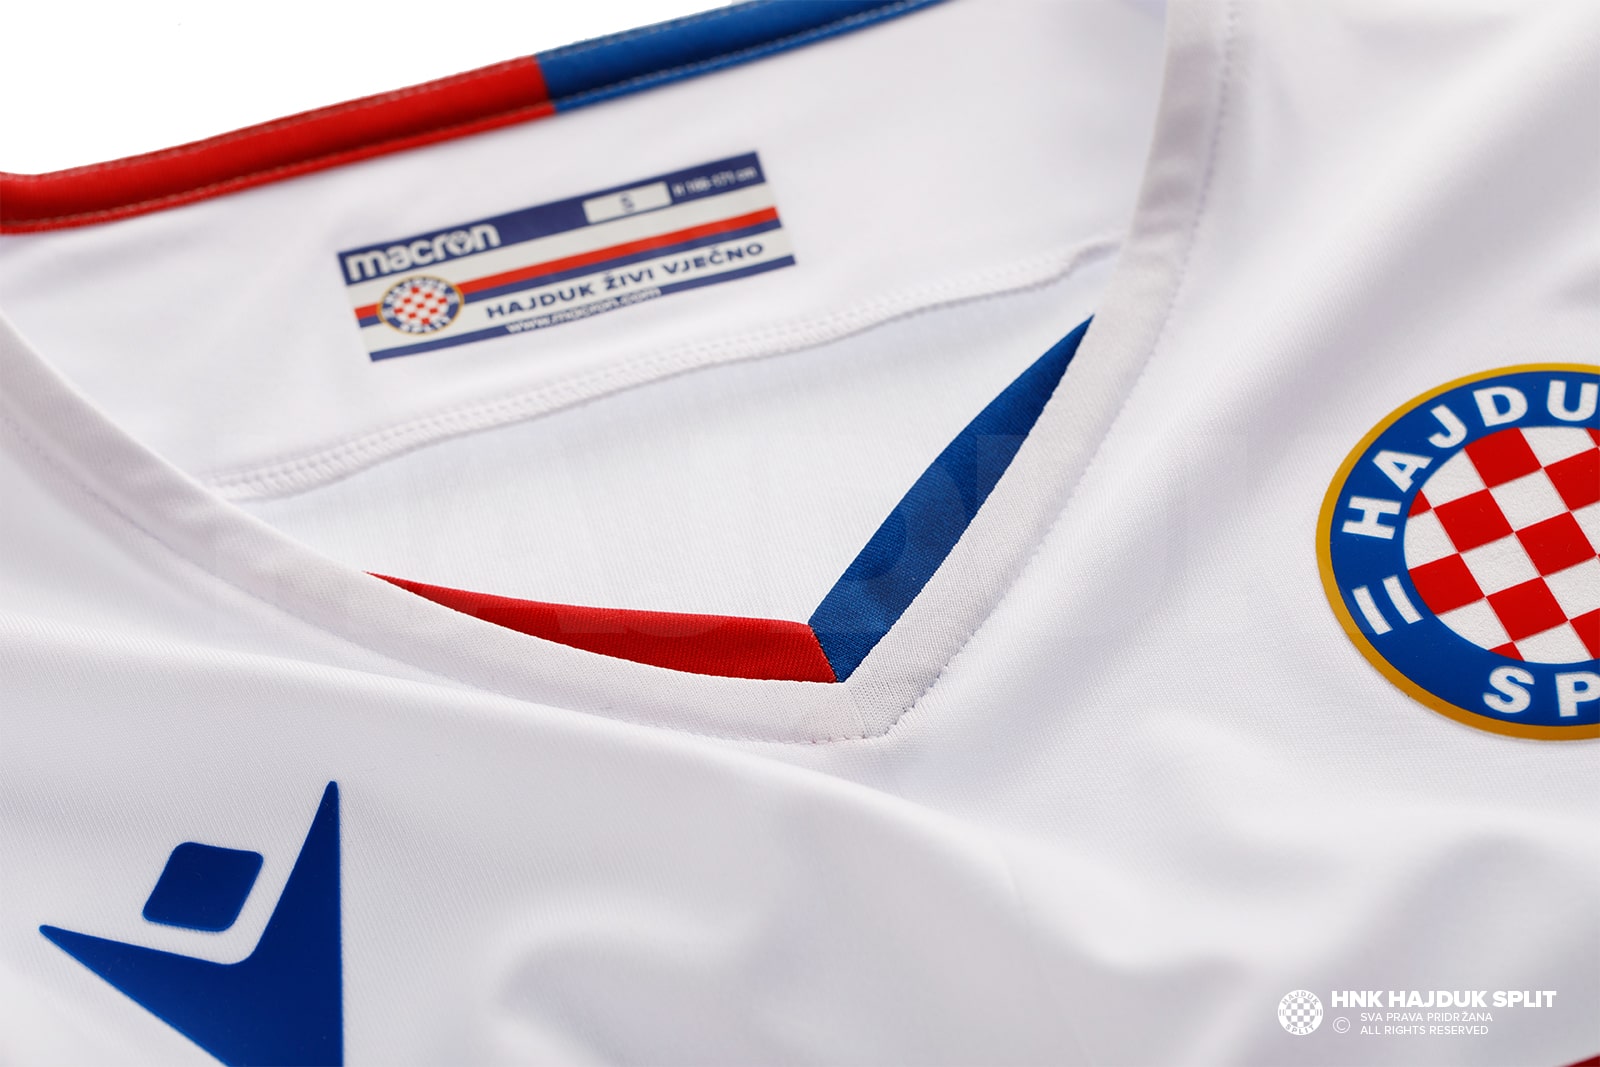 Hajduk Split & Macron unveil the new 2020/21 home kit!